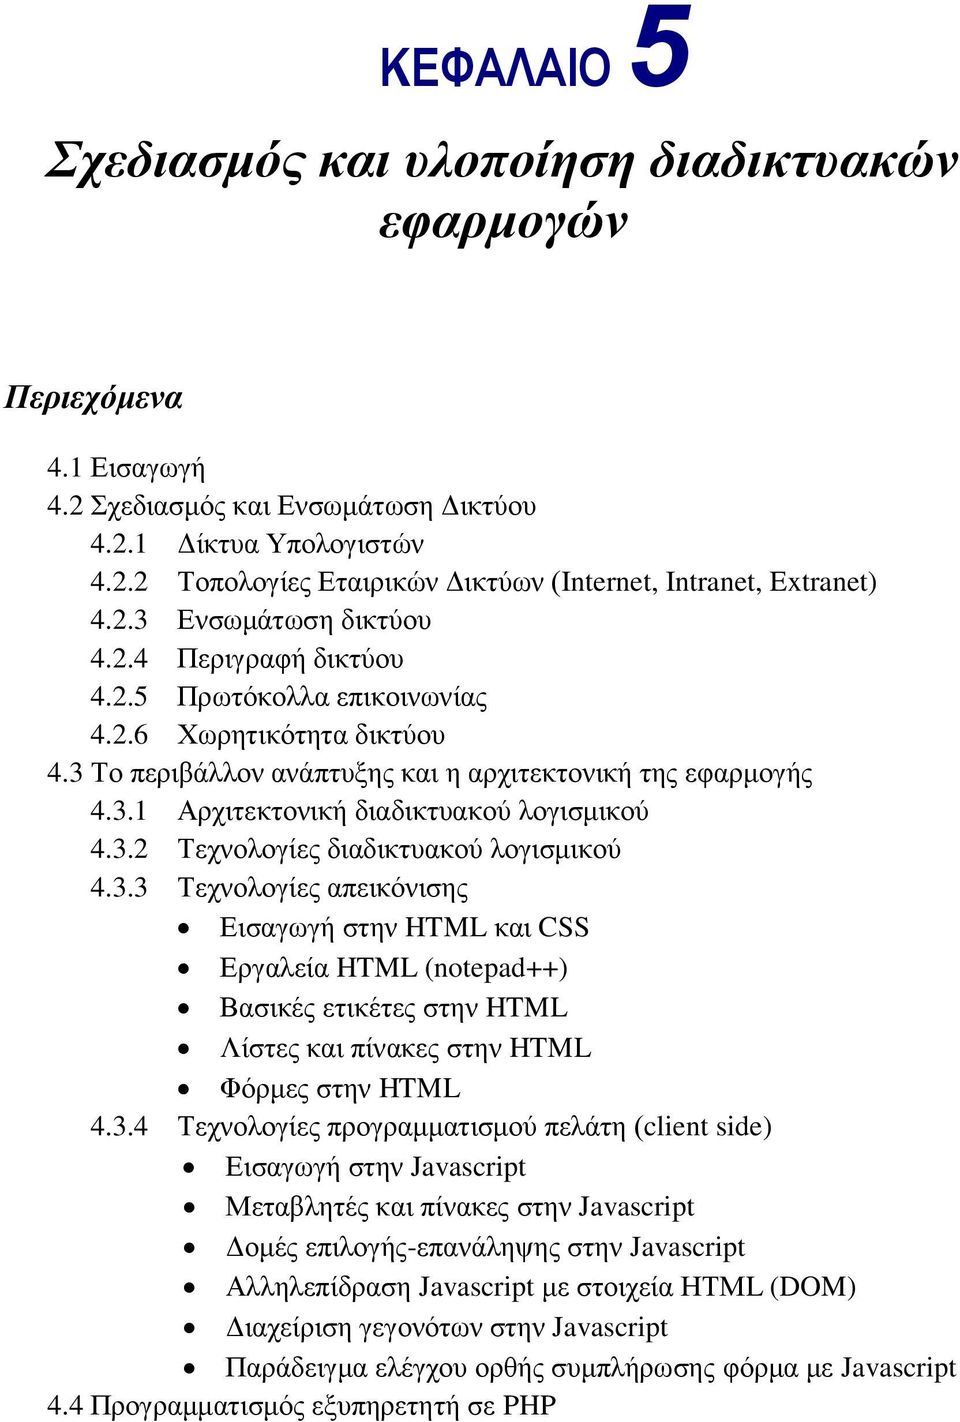 3.2 Τεχνολογίες διαδικτυακού λογισμικού 4.3.3 Τεχνολογίες απεικόνισης Εισαγωγή στην HTML και CSS Εργαλεία HTML (notepad++) Βασικές ετικέτες στην HTML Λίστες και πίνακες στην HTML Φόρμες στην HTML